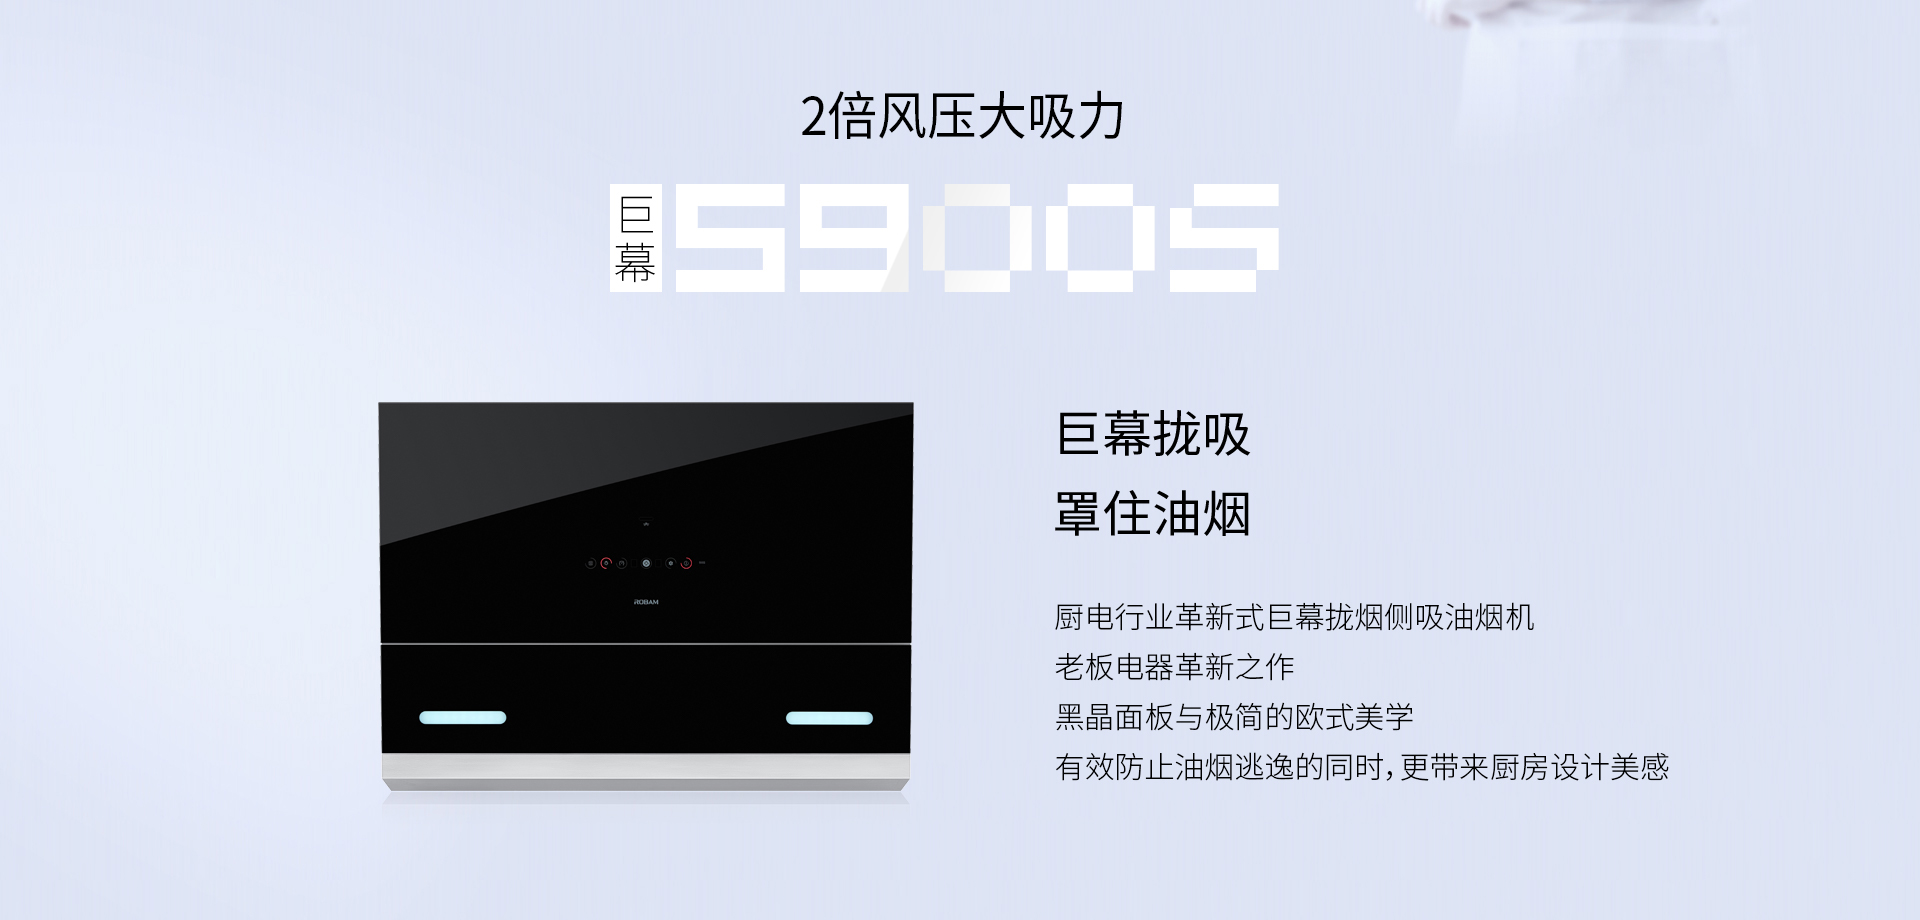 5900S优化-PC-1101_02.jpg